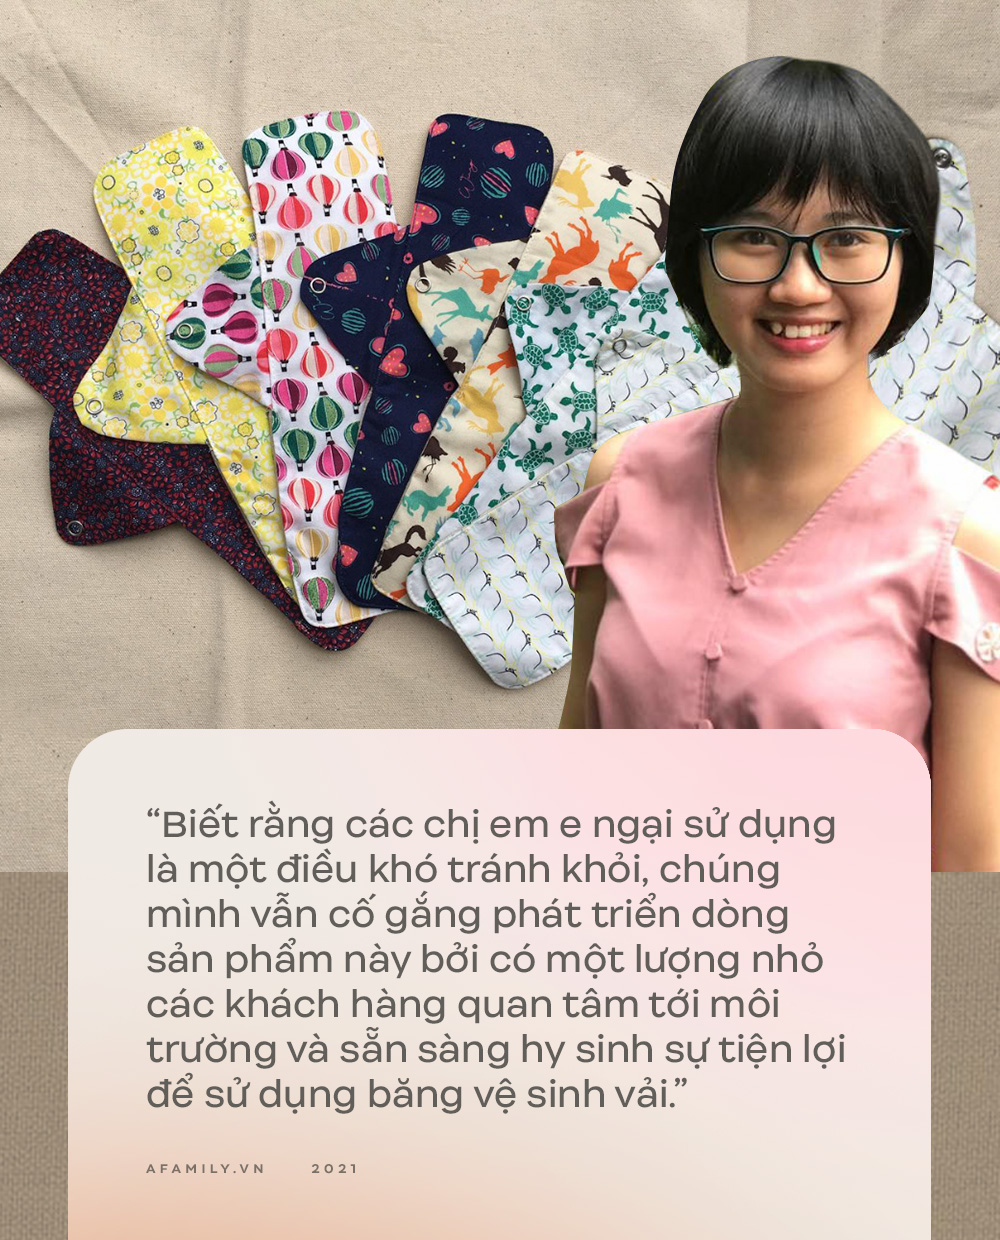 9X học Ngoại Thương khởi nghiệp bằng băng vệ sinh vải, sản phẩm khiến chị em e ngại nhưng lại có nhiều lợi ích bất ngờ - Ảnh 4.